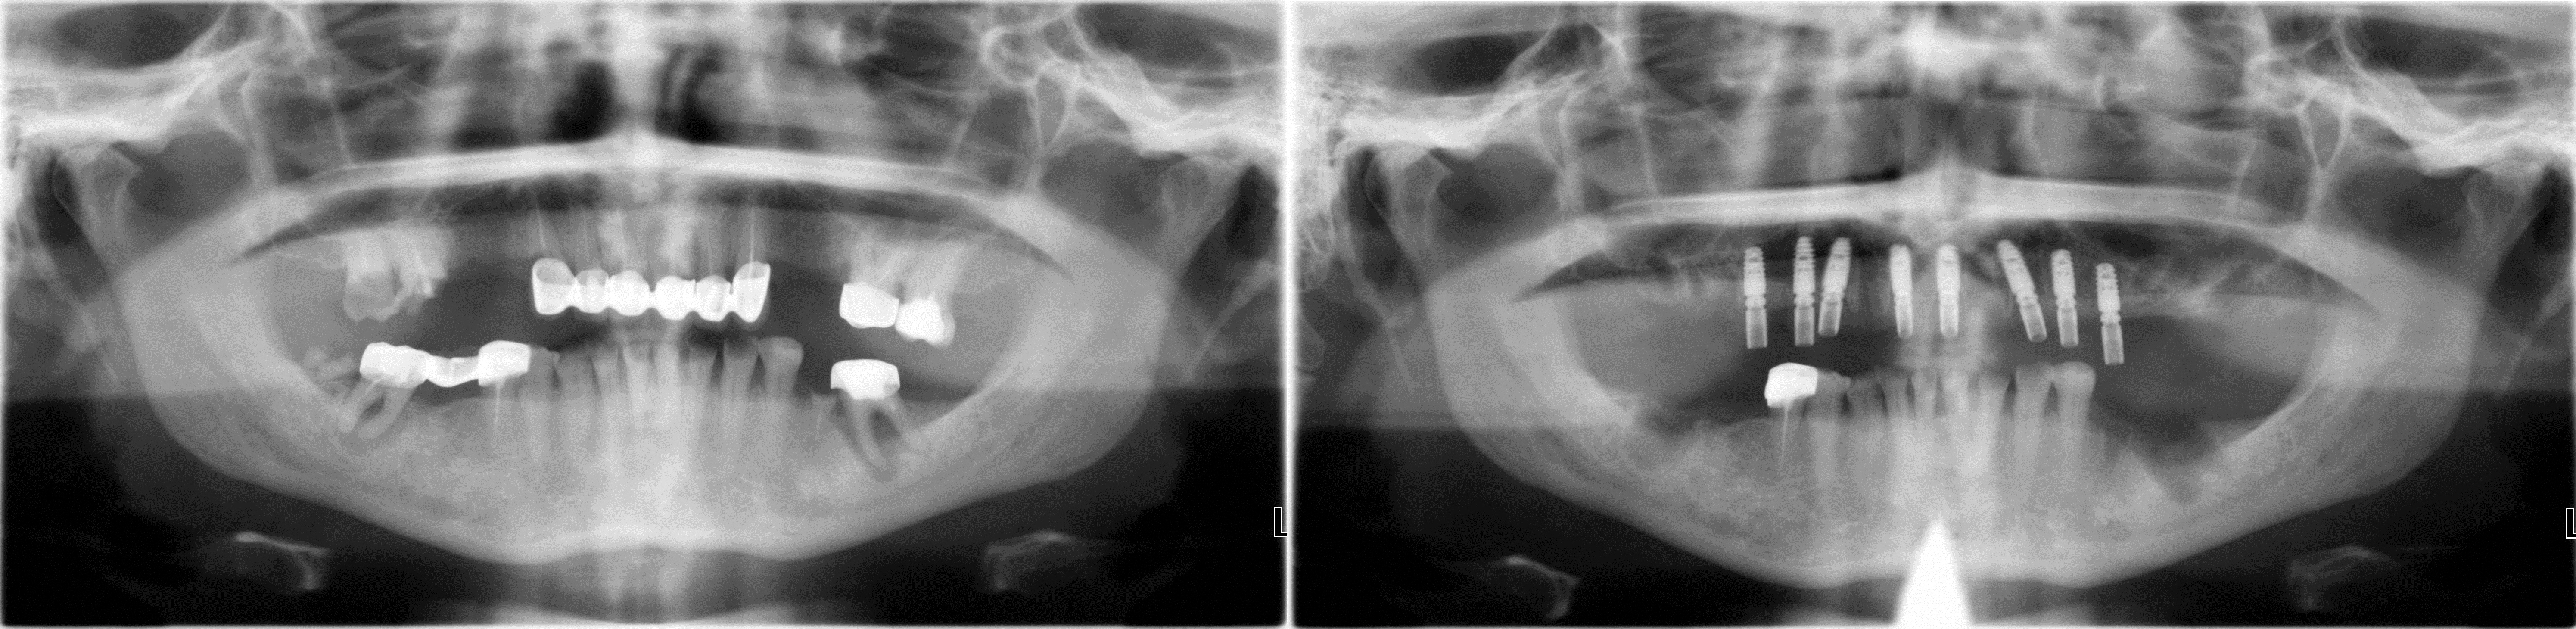 Рентгеновский снимок всей зубочелюстной системы до удаления зубов и после установки коротких и тонких имплантов в верхнюю челюсть